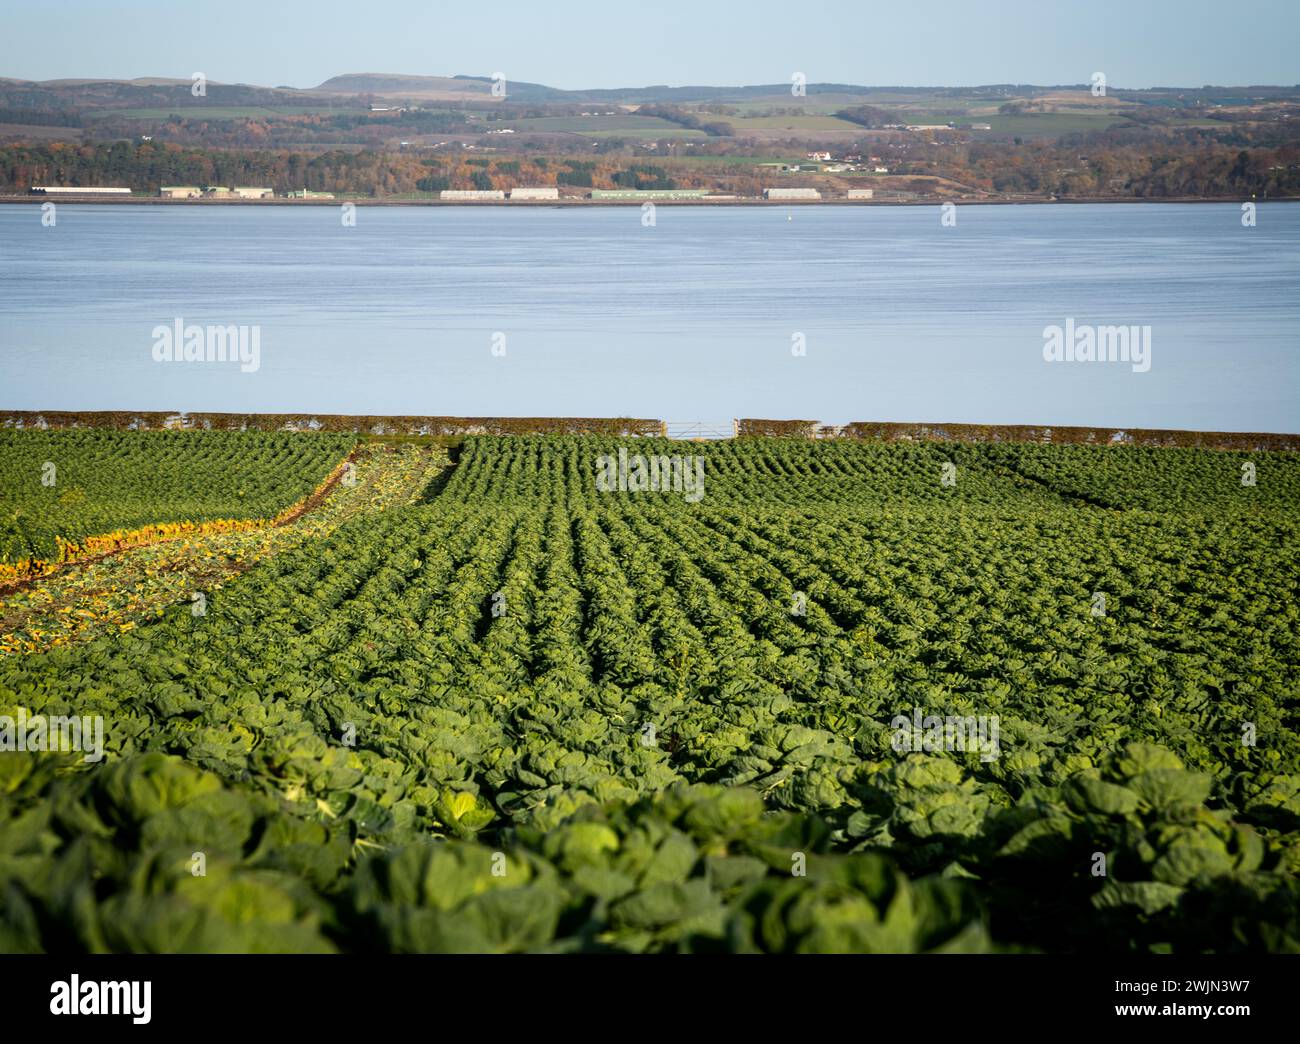 Le verdure di cavoletto di Bruxelles crescono in un campo di Fife, Scozia, che si affaccia sul Firth of Forth con il Forth Road Bridge e Blackness Foto Stock